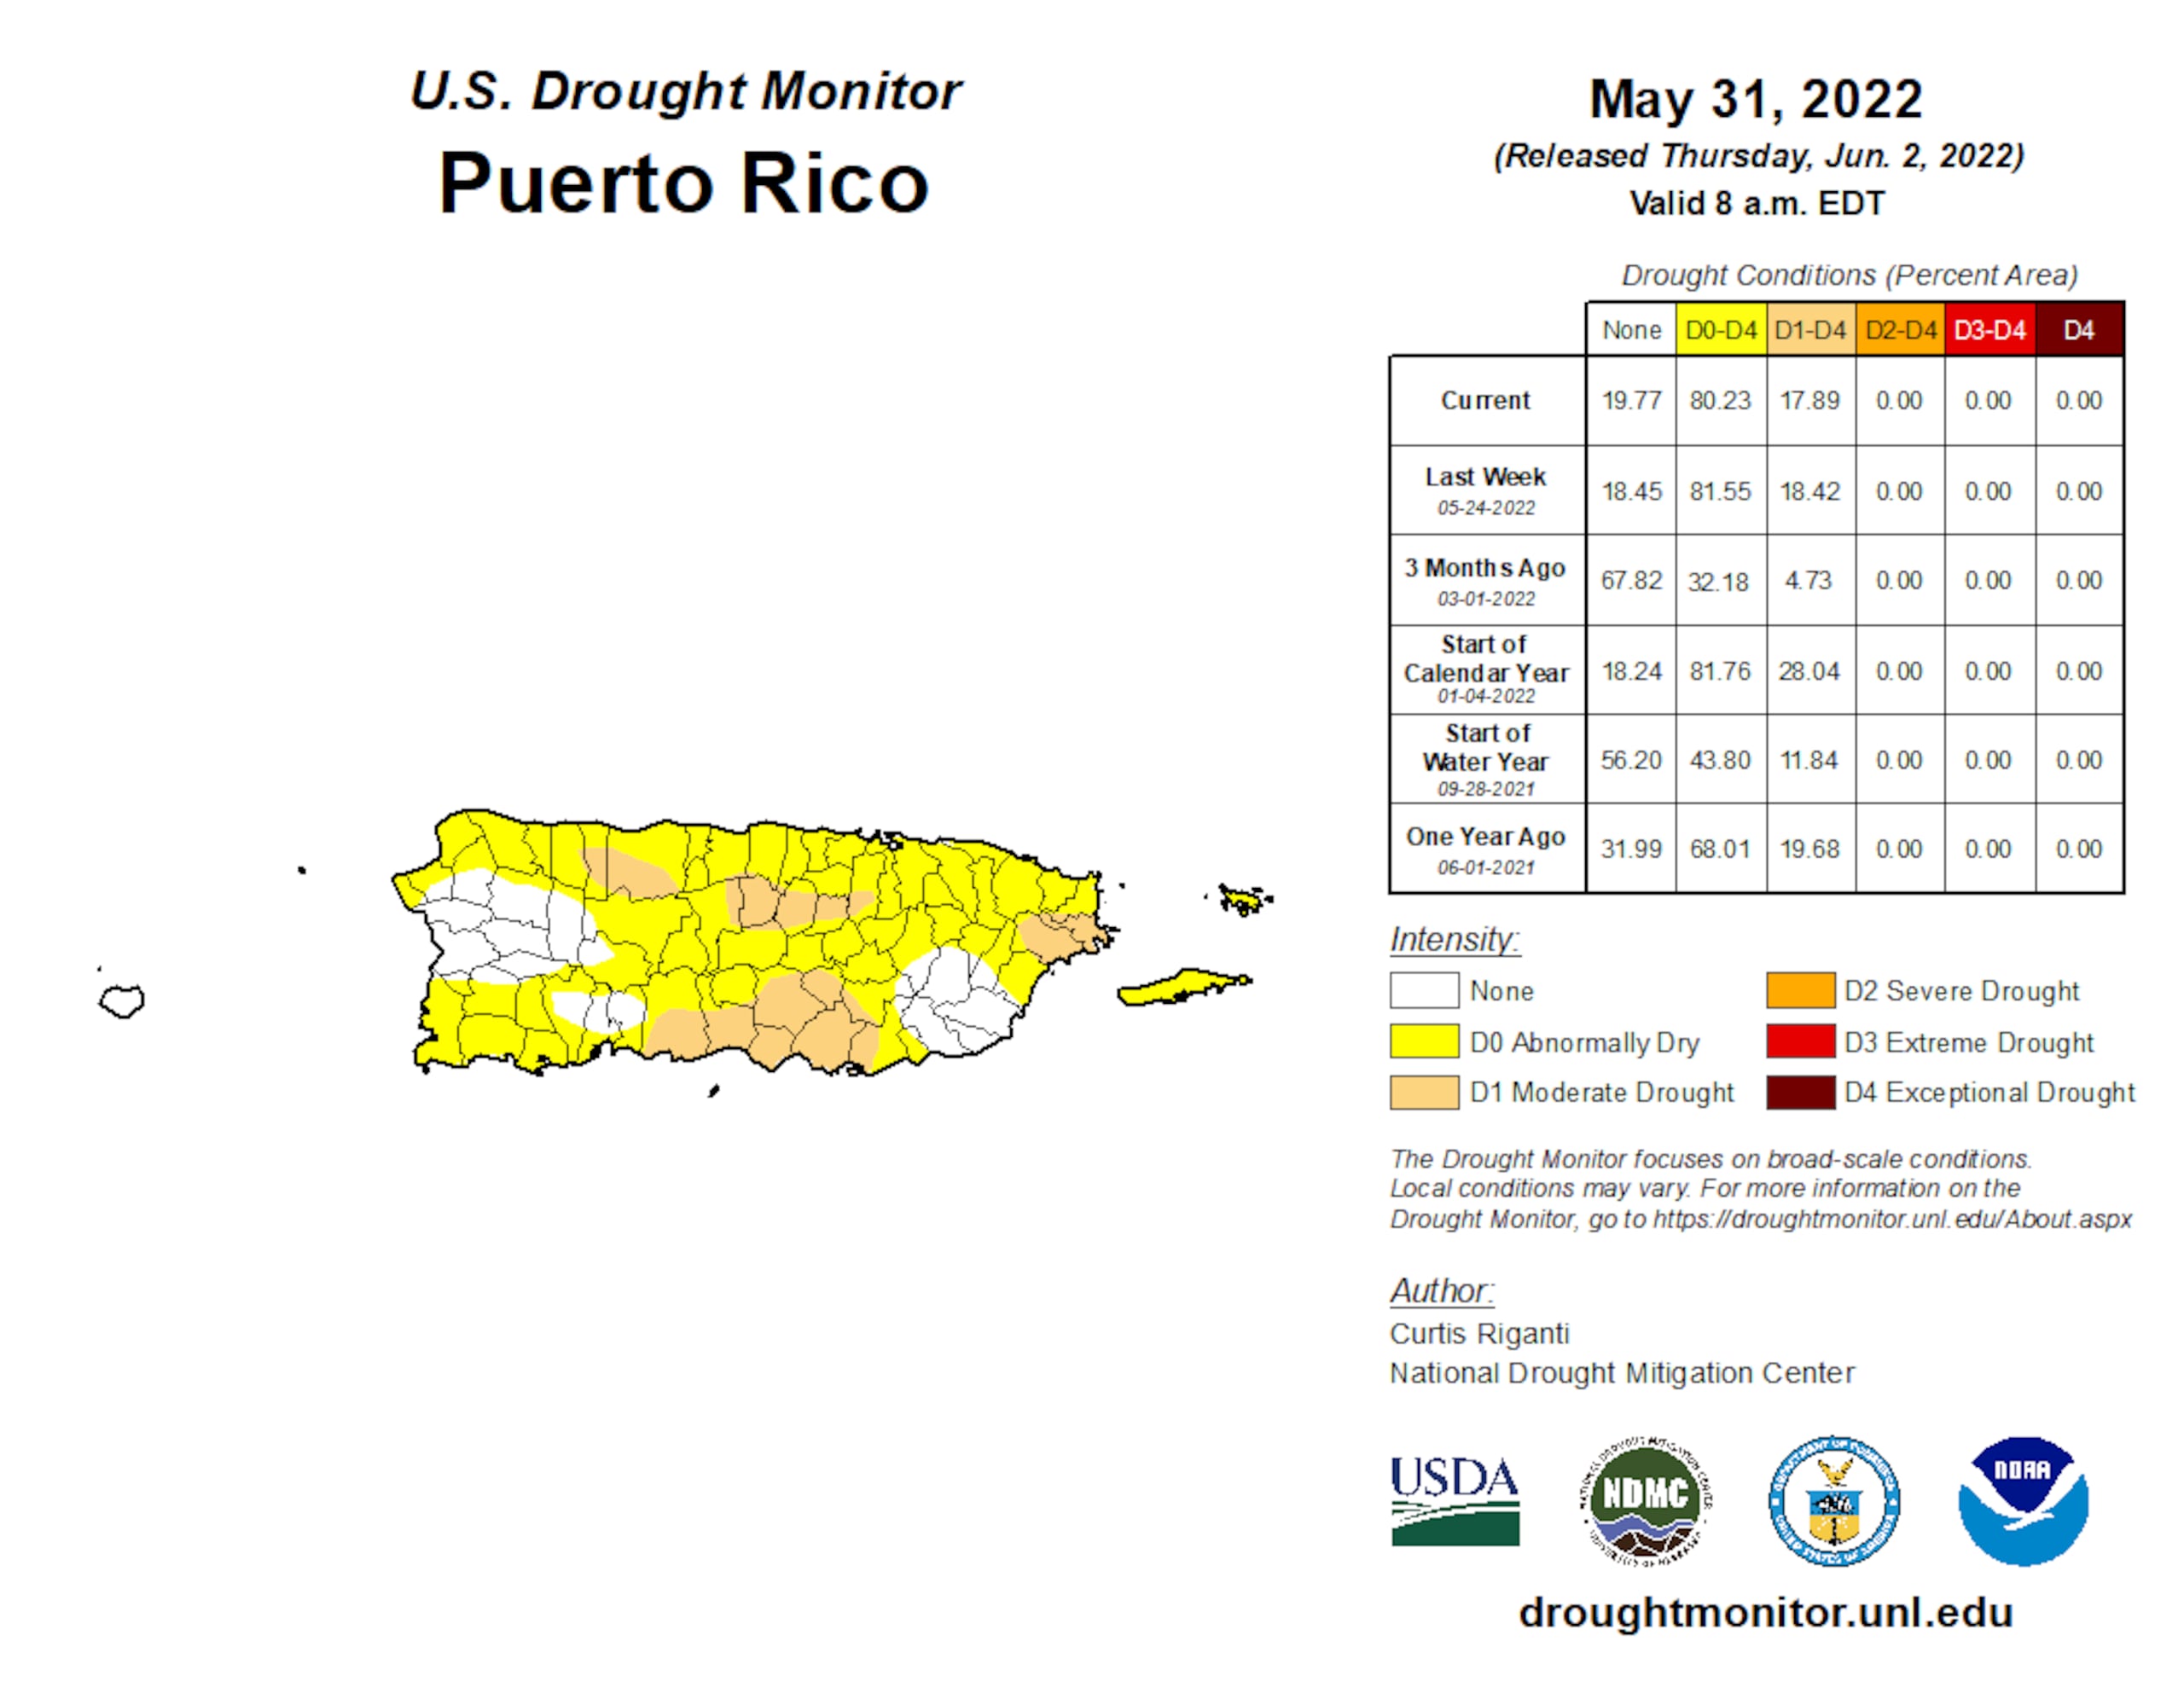 Sequía en Puerto Rico, según los datos del  31 de mayo de 2022, publicados el 2 de junio de 2022.